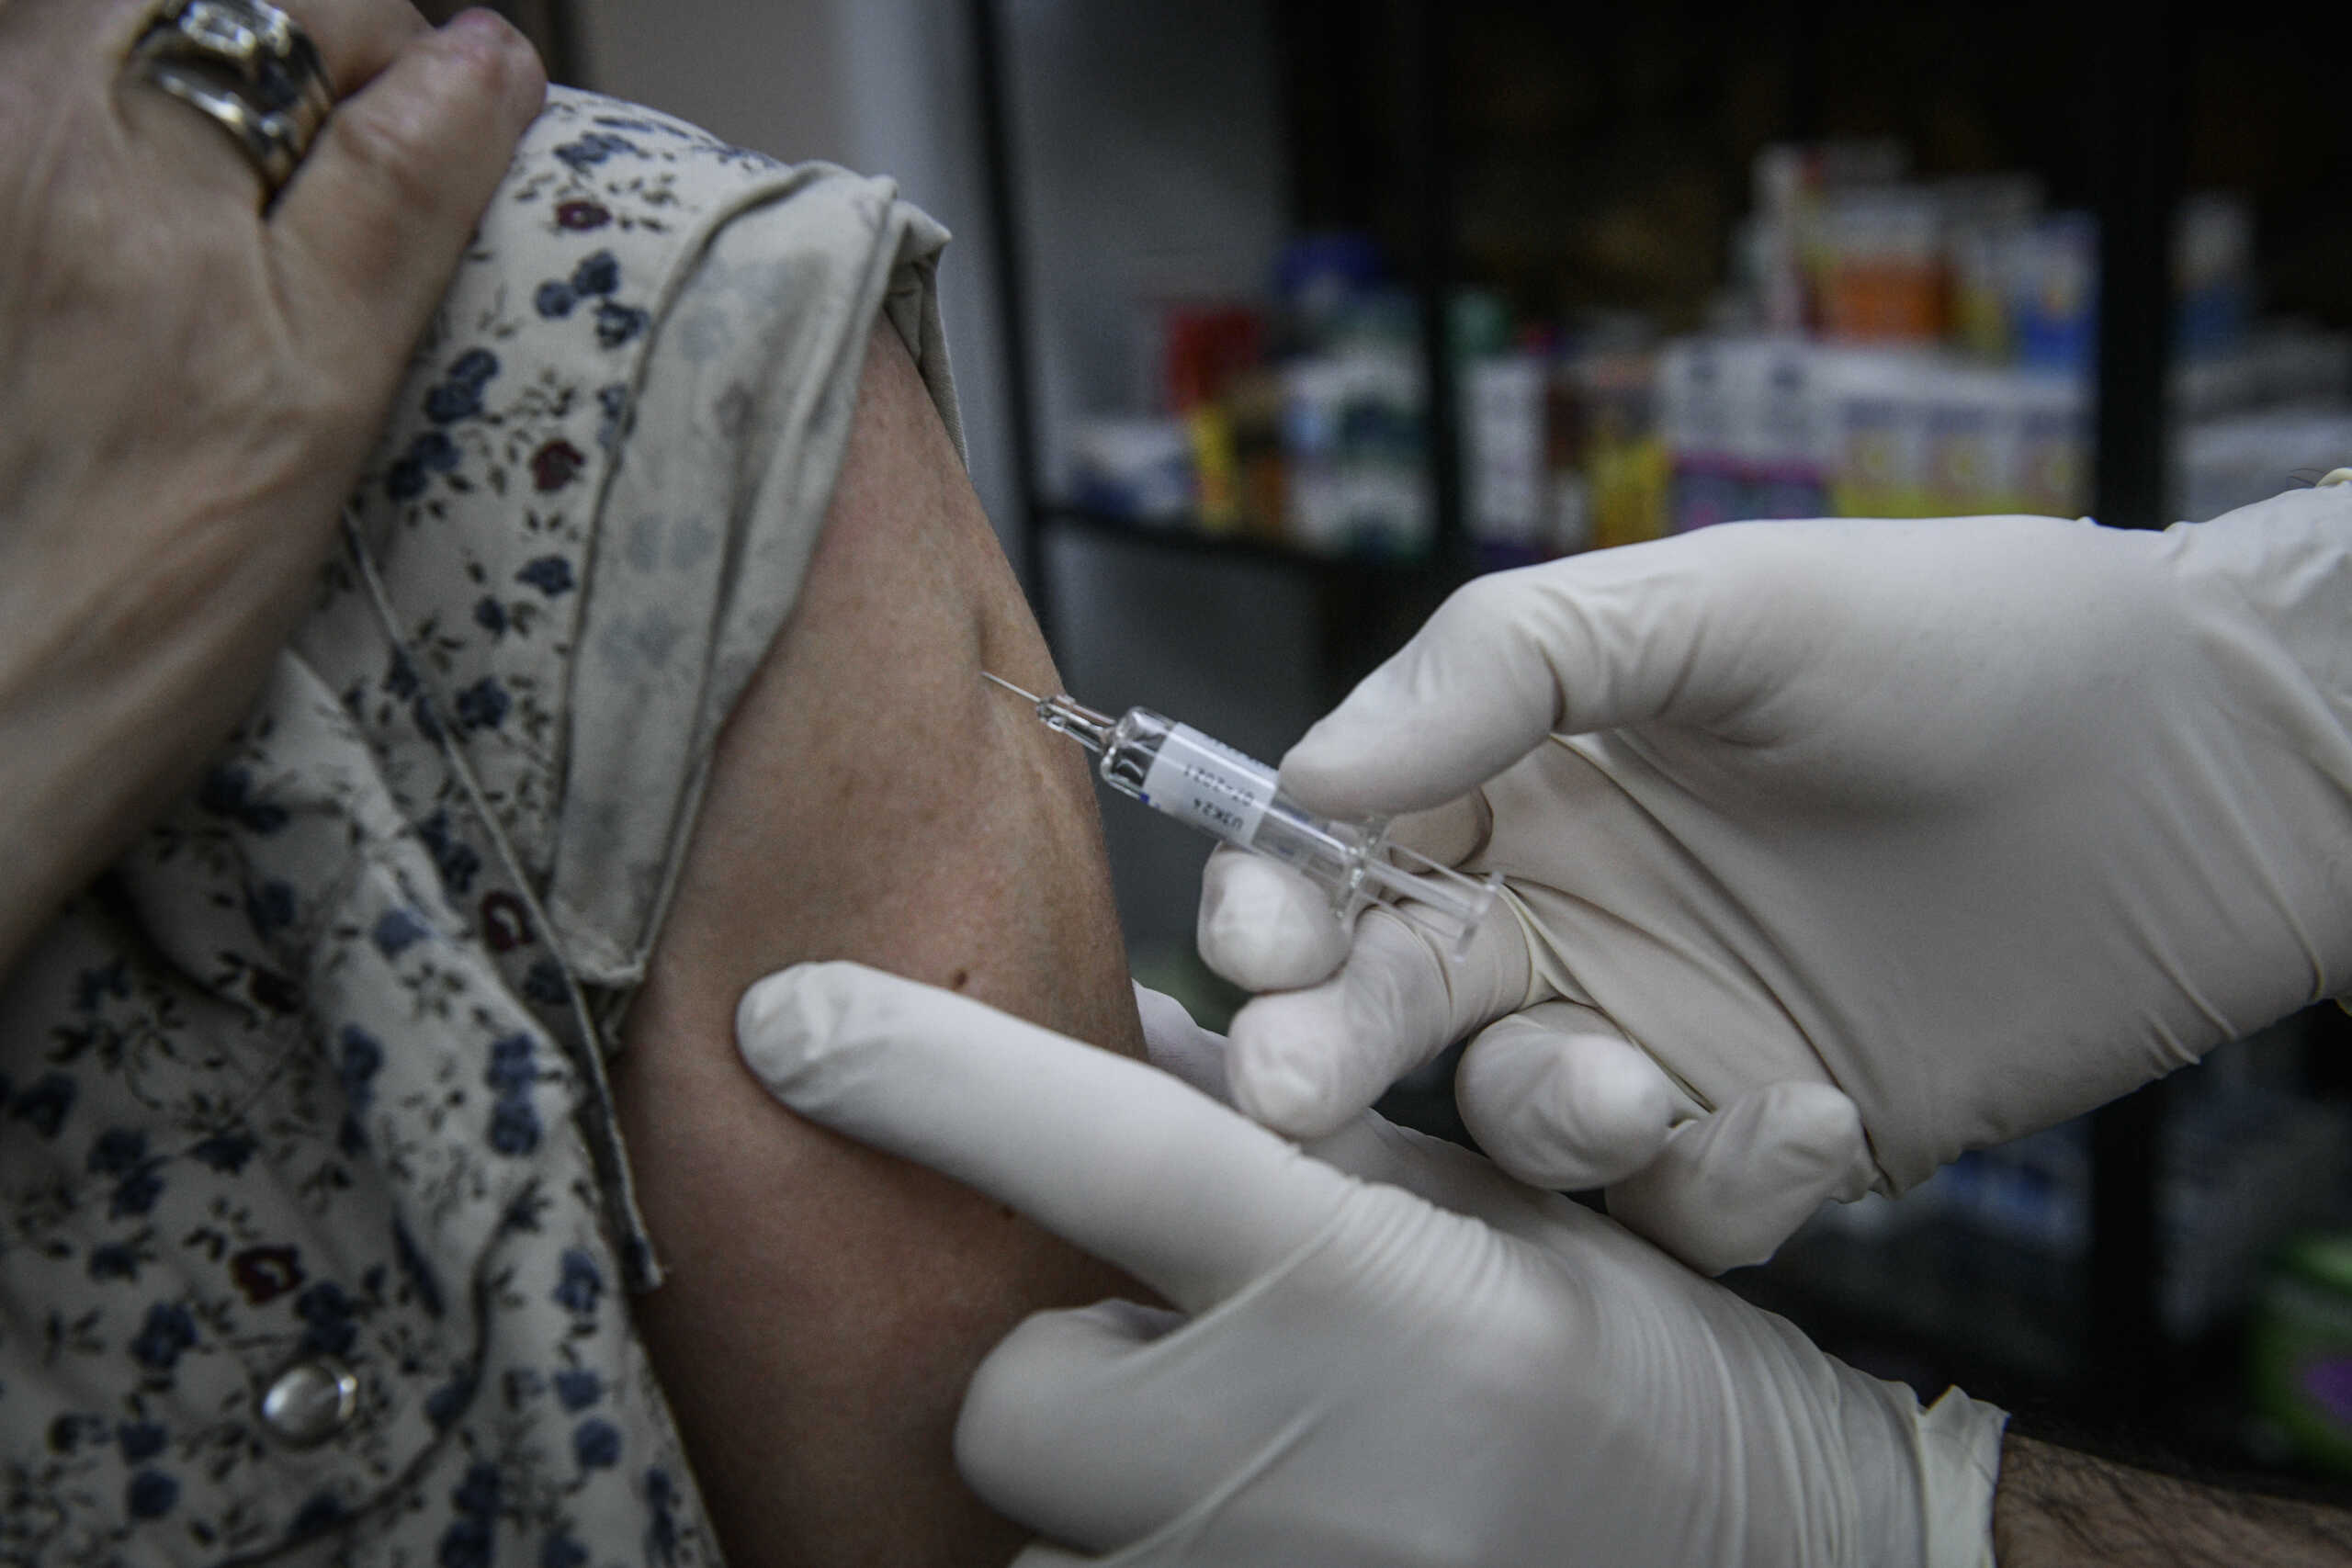 Φαρμακοποιοί: Στην αναμονή ο αντιγριπικός εμβολιασμός χωρίς συνταγή γιατρού στα φαρμακεία – Δεν ξεκινάει από σήμερα 1/11